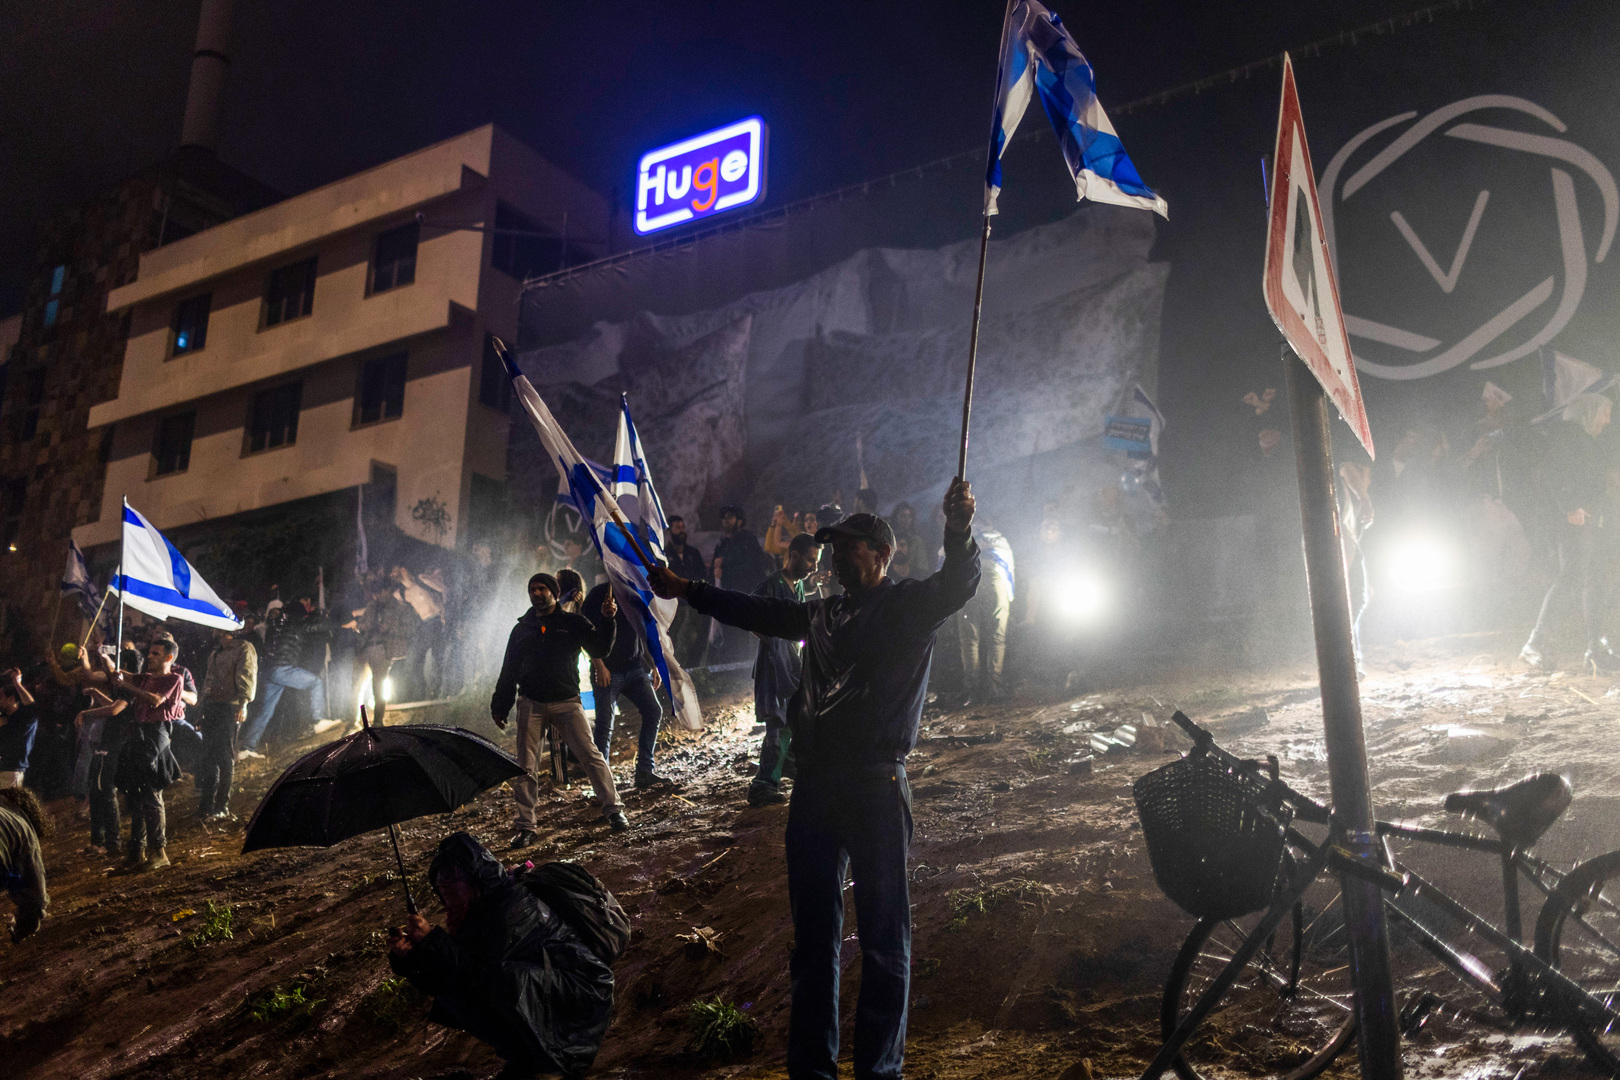 مشهد غير مألوف.. الإسرائليون يلقون الحجارة على الشرطة بعد ليلة عنيفة من الاحتجاجات (فيديو)